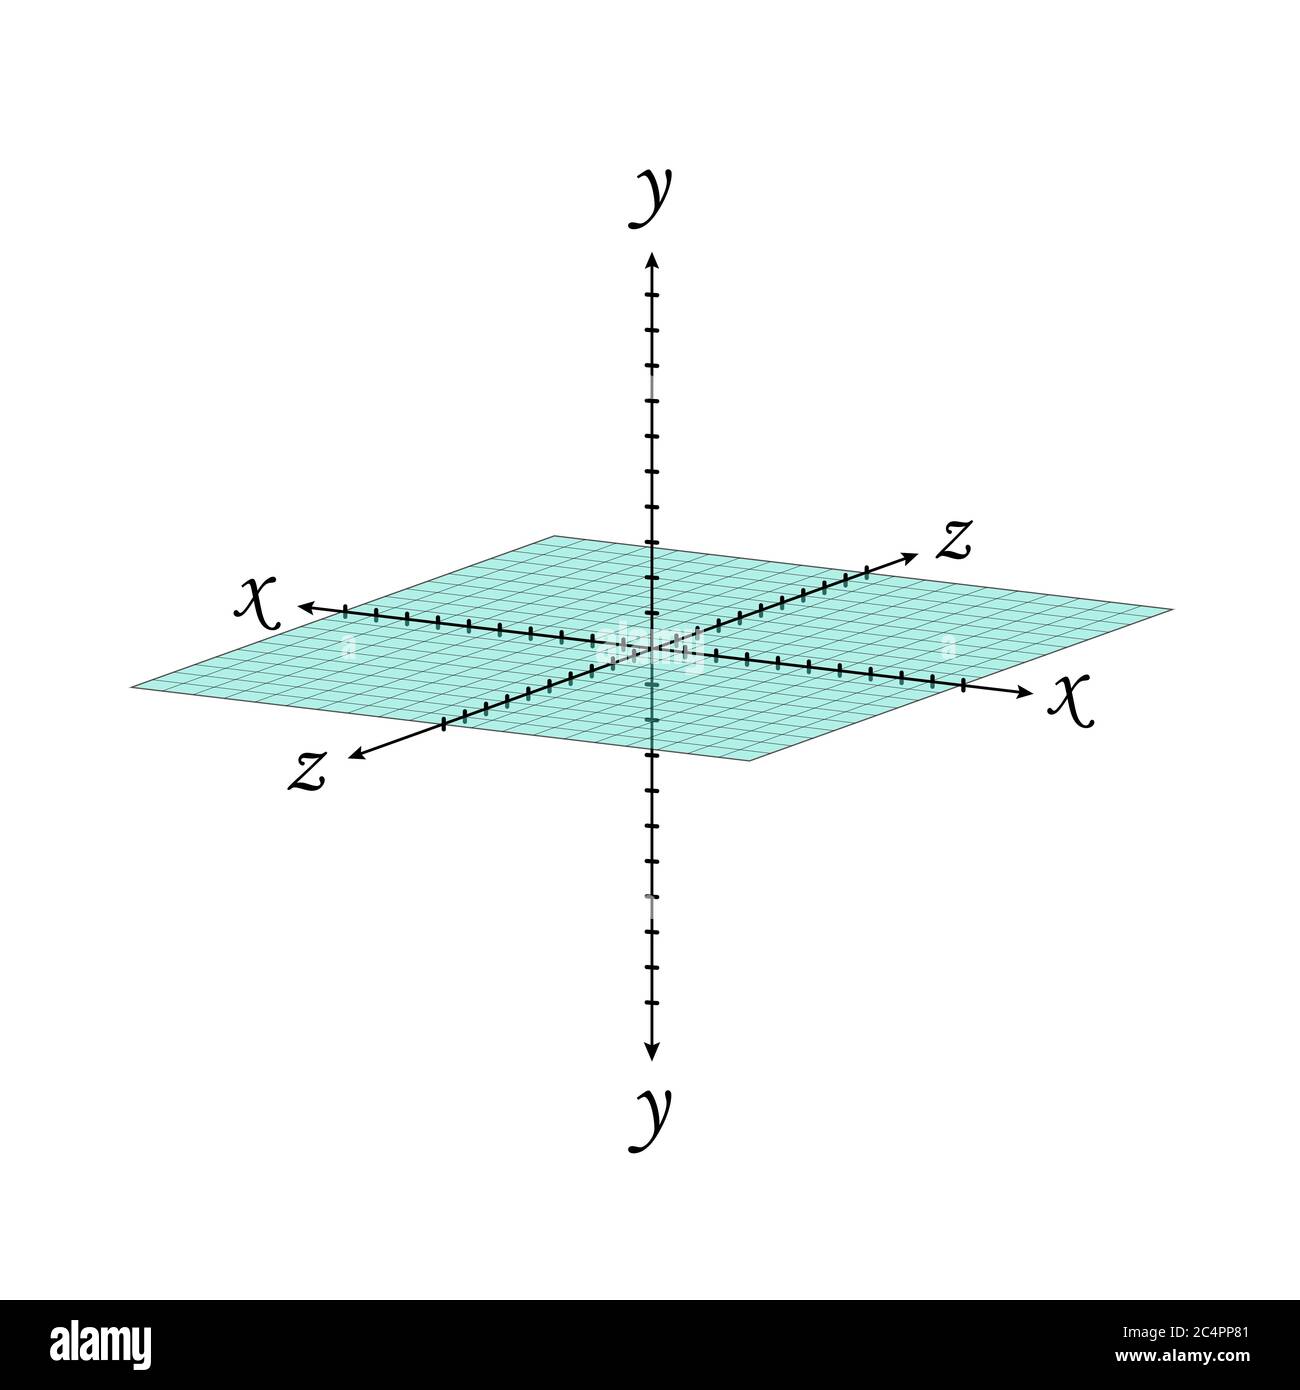 Grille de perspective du système de coordonnées cartésien en trois dimensions. Projection de formes volumiques isométriques vectorielles. Schéma géométrique et algèbre. Feuille de travail vierge Illustration de Vecteur